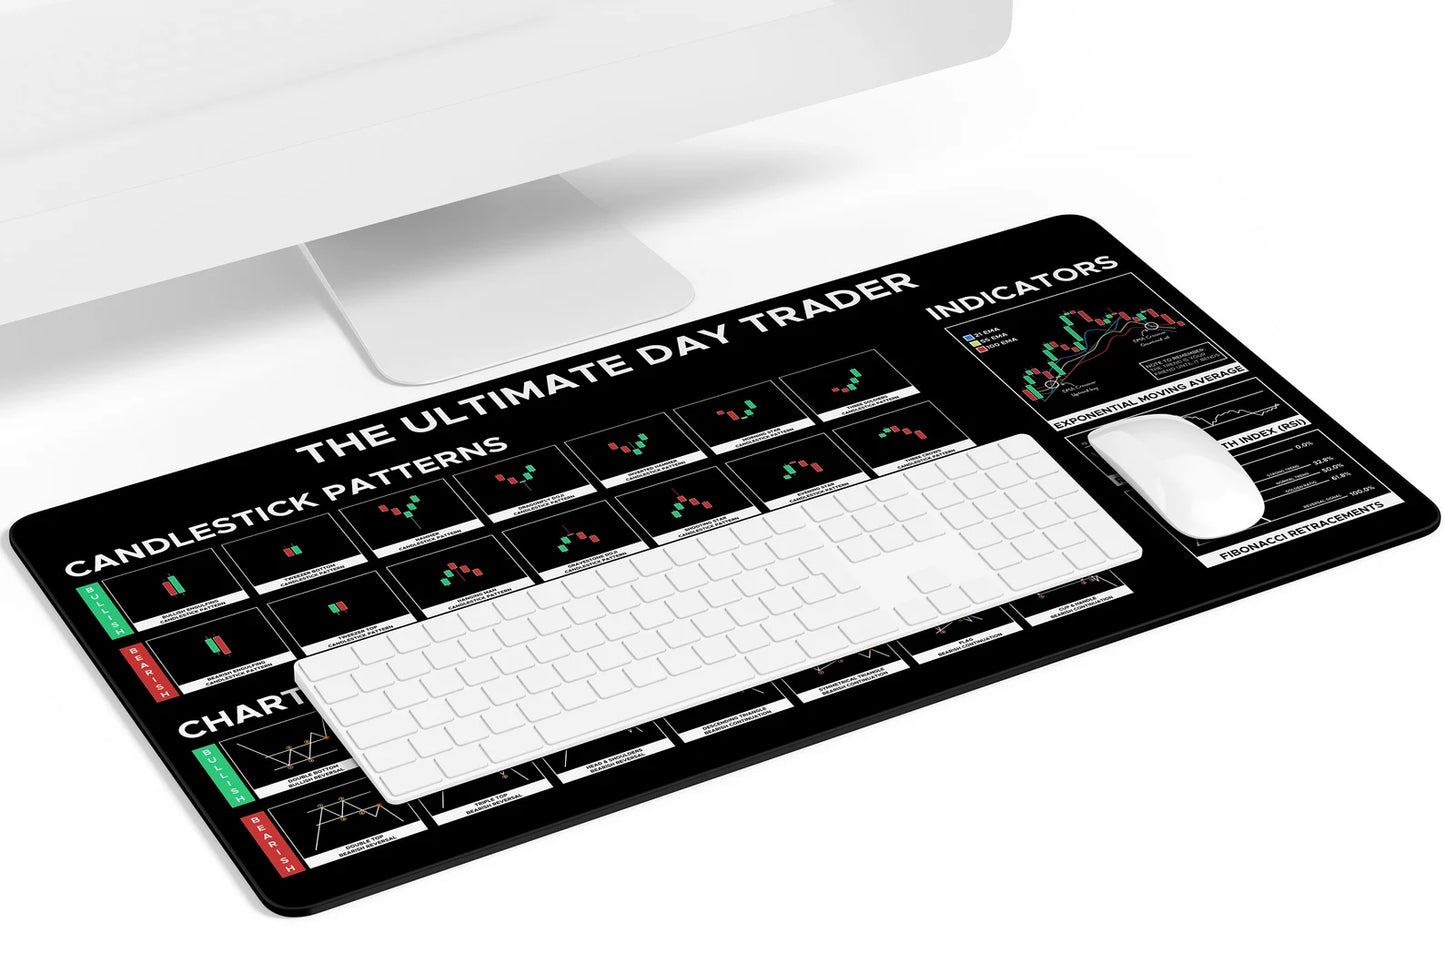 Ultimate Trader (Desk Mat) - tickermart.com